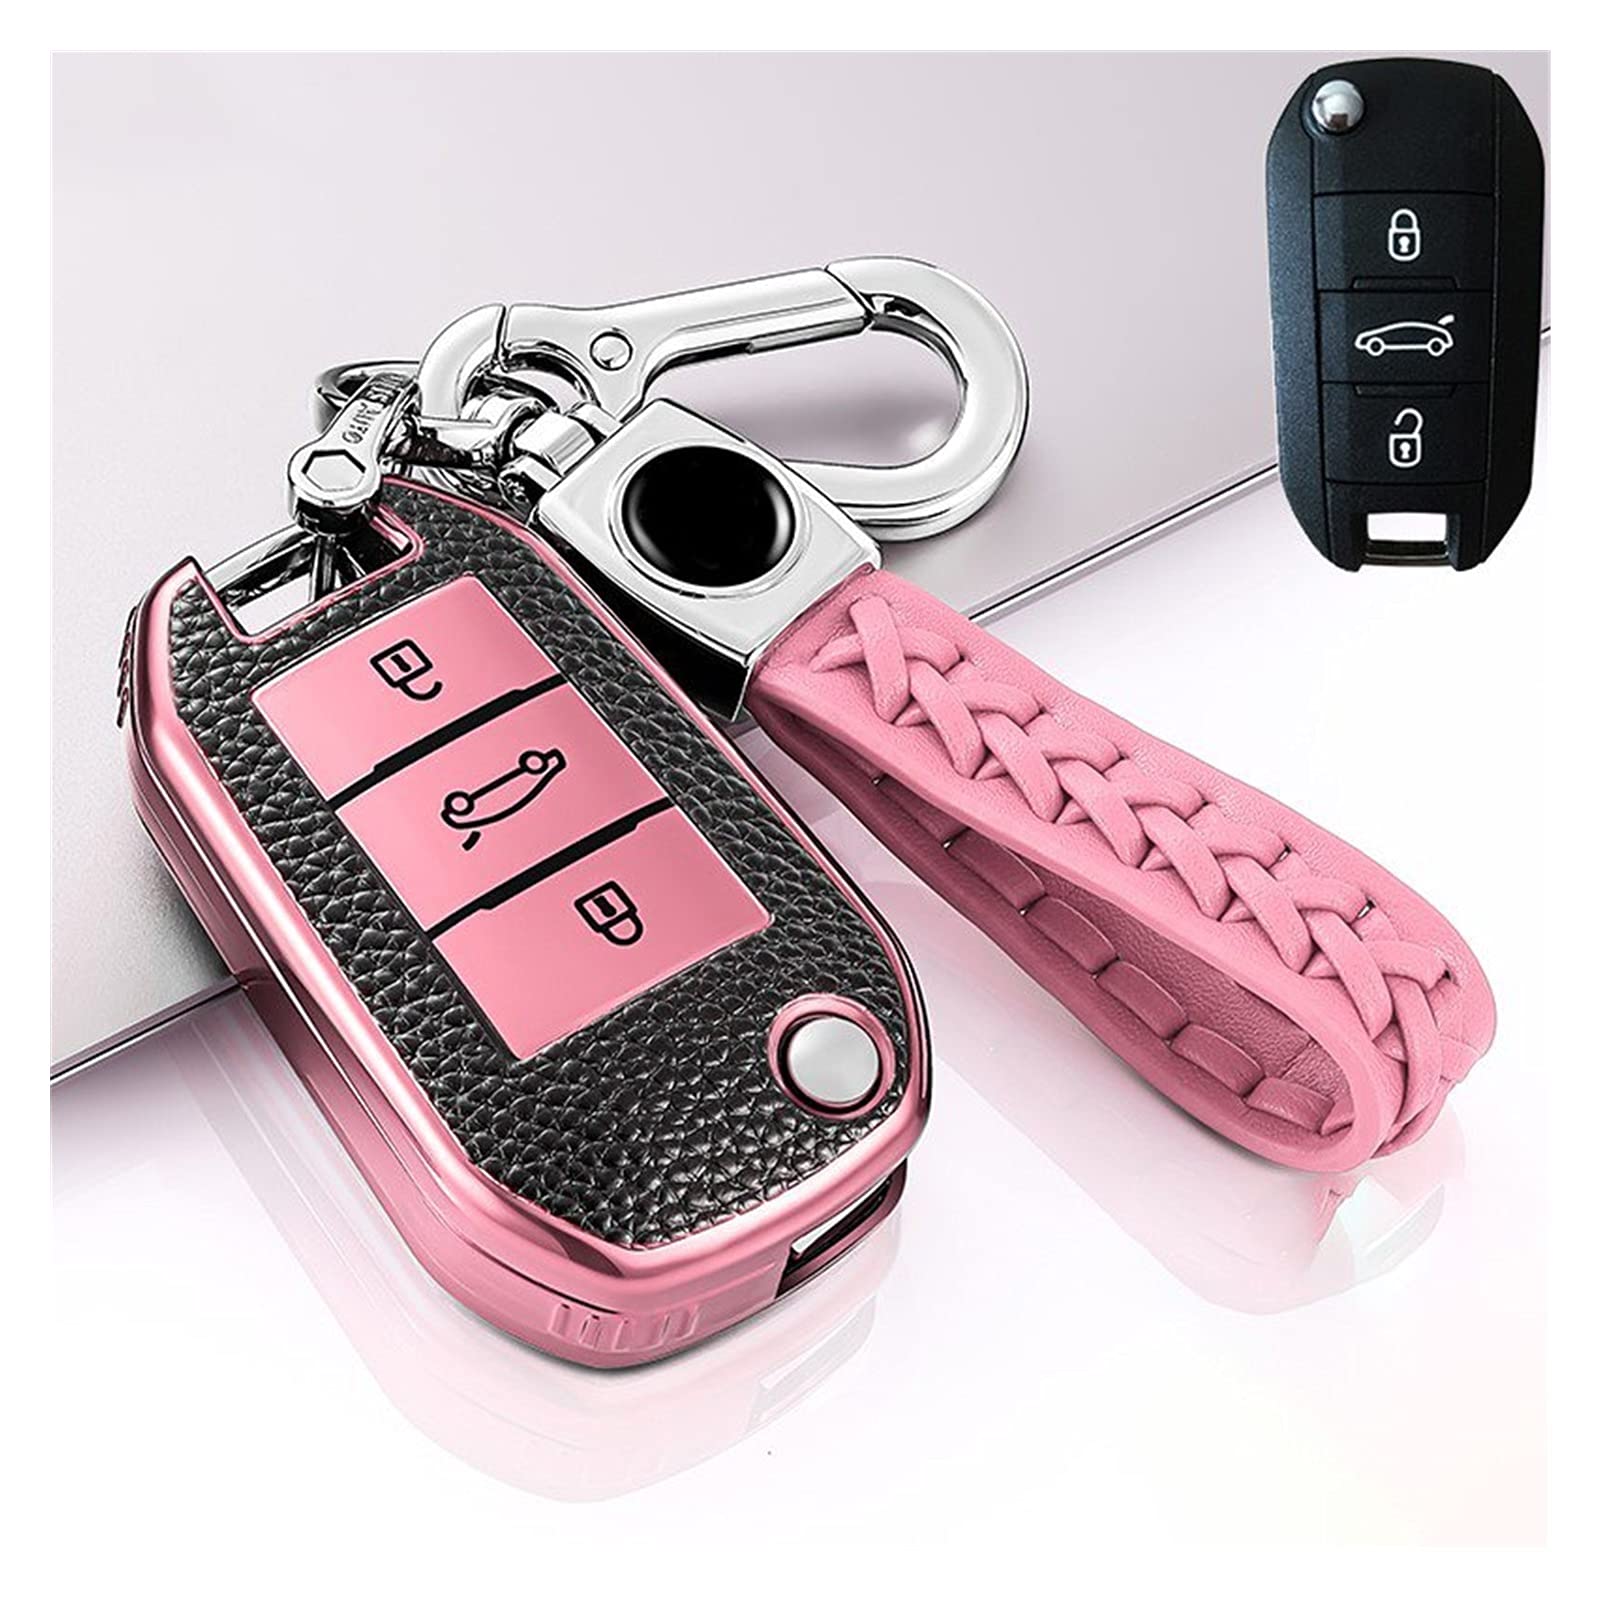 MSJL Autoschlüssel Schlüssel Hülle Schlüsselanhänger Tragbare Auto Key Case Cover Tasche Leder + TPU Für Citroen C4 Kaktus C5 Peugeot 508 301 2008 3008 208 408 508 (Farbe : Rosa) von MSJL